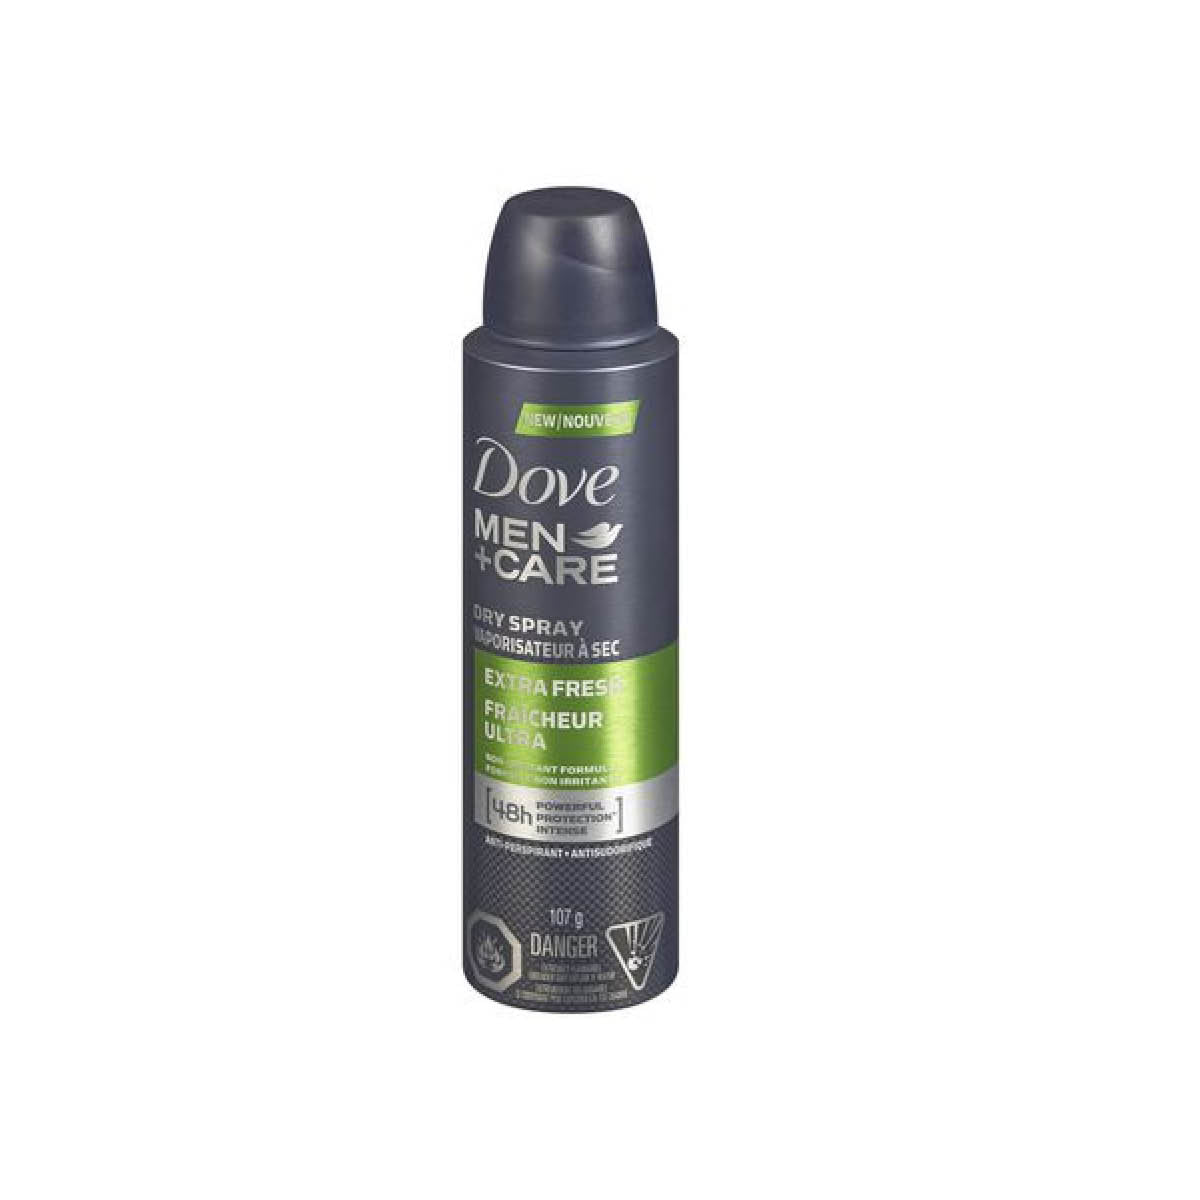 Dove Men + Care antiperspirant dry spray, extra freshness 107g